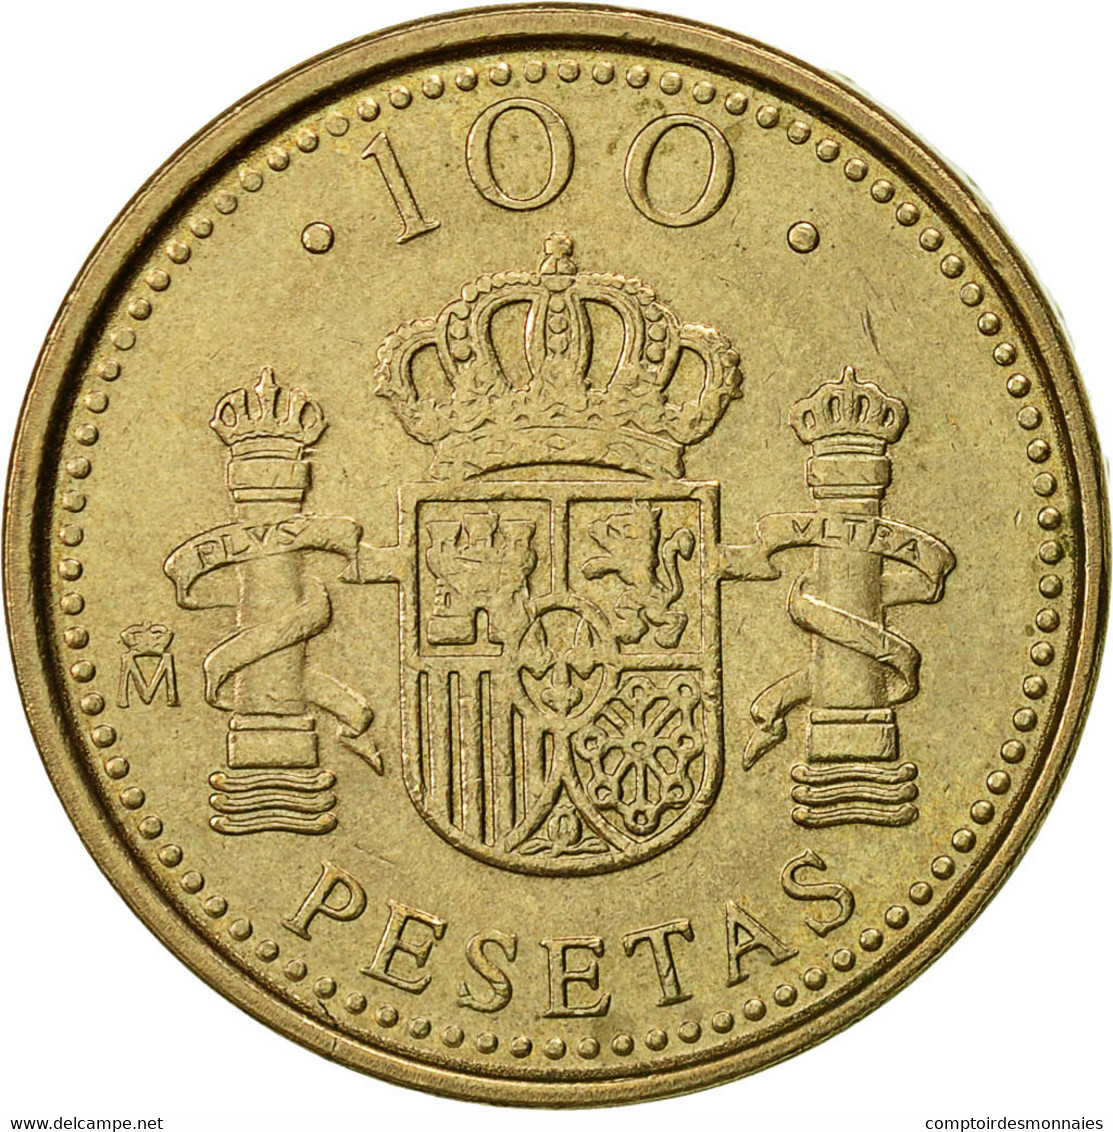 Monnaie, Espagne, Juan Carlos I, 100 Pesetas, 1998, Madrid, TTB - 100 Peseta